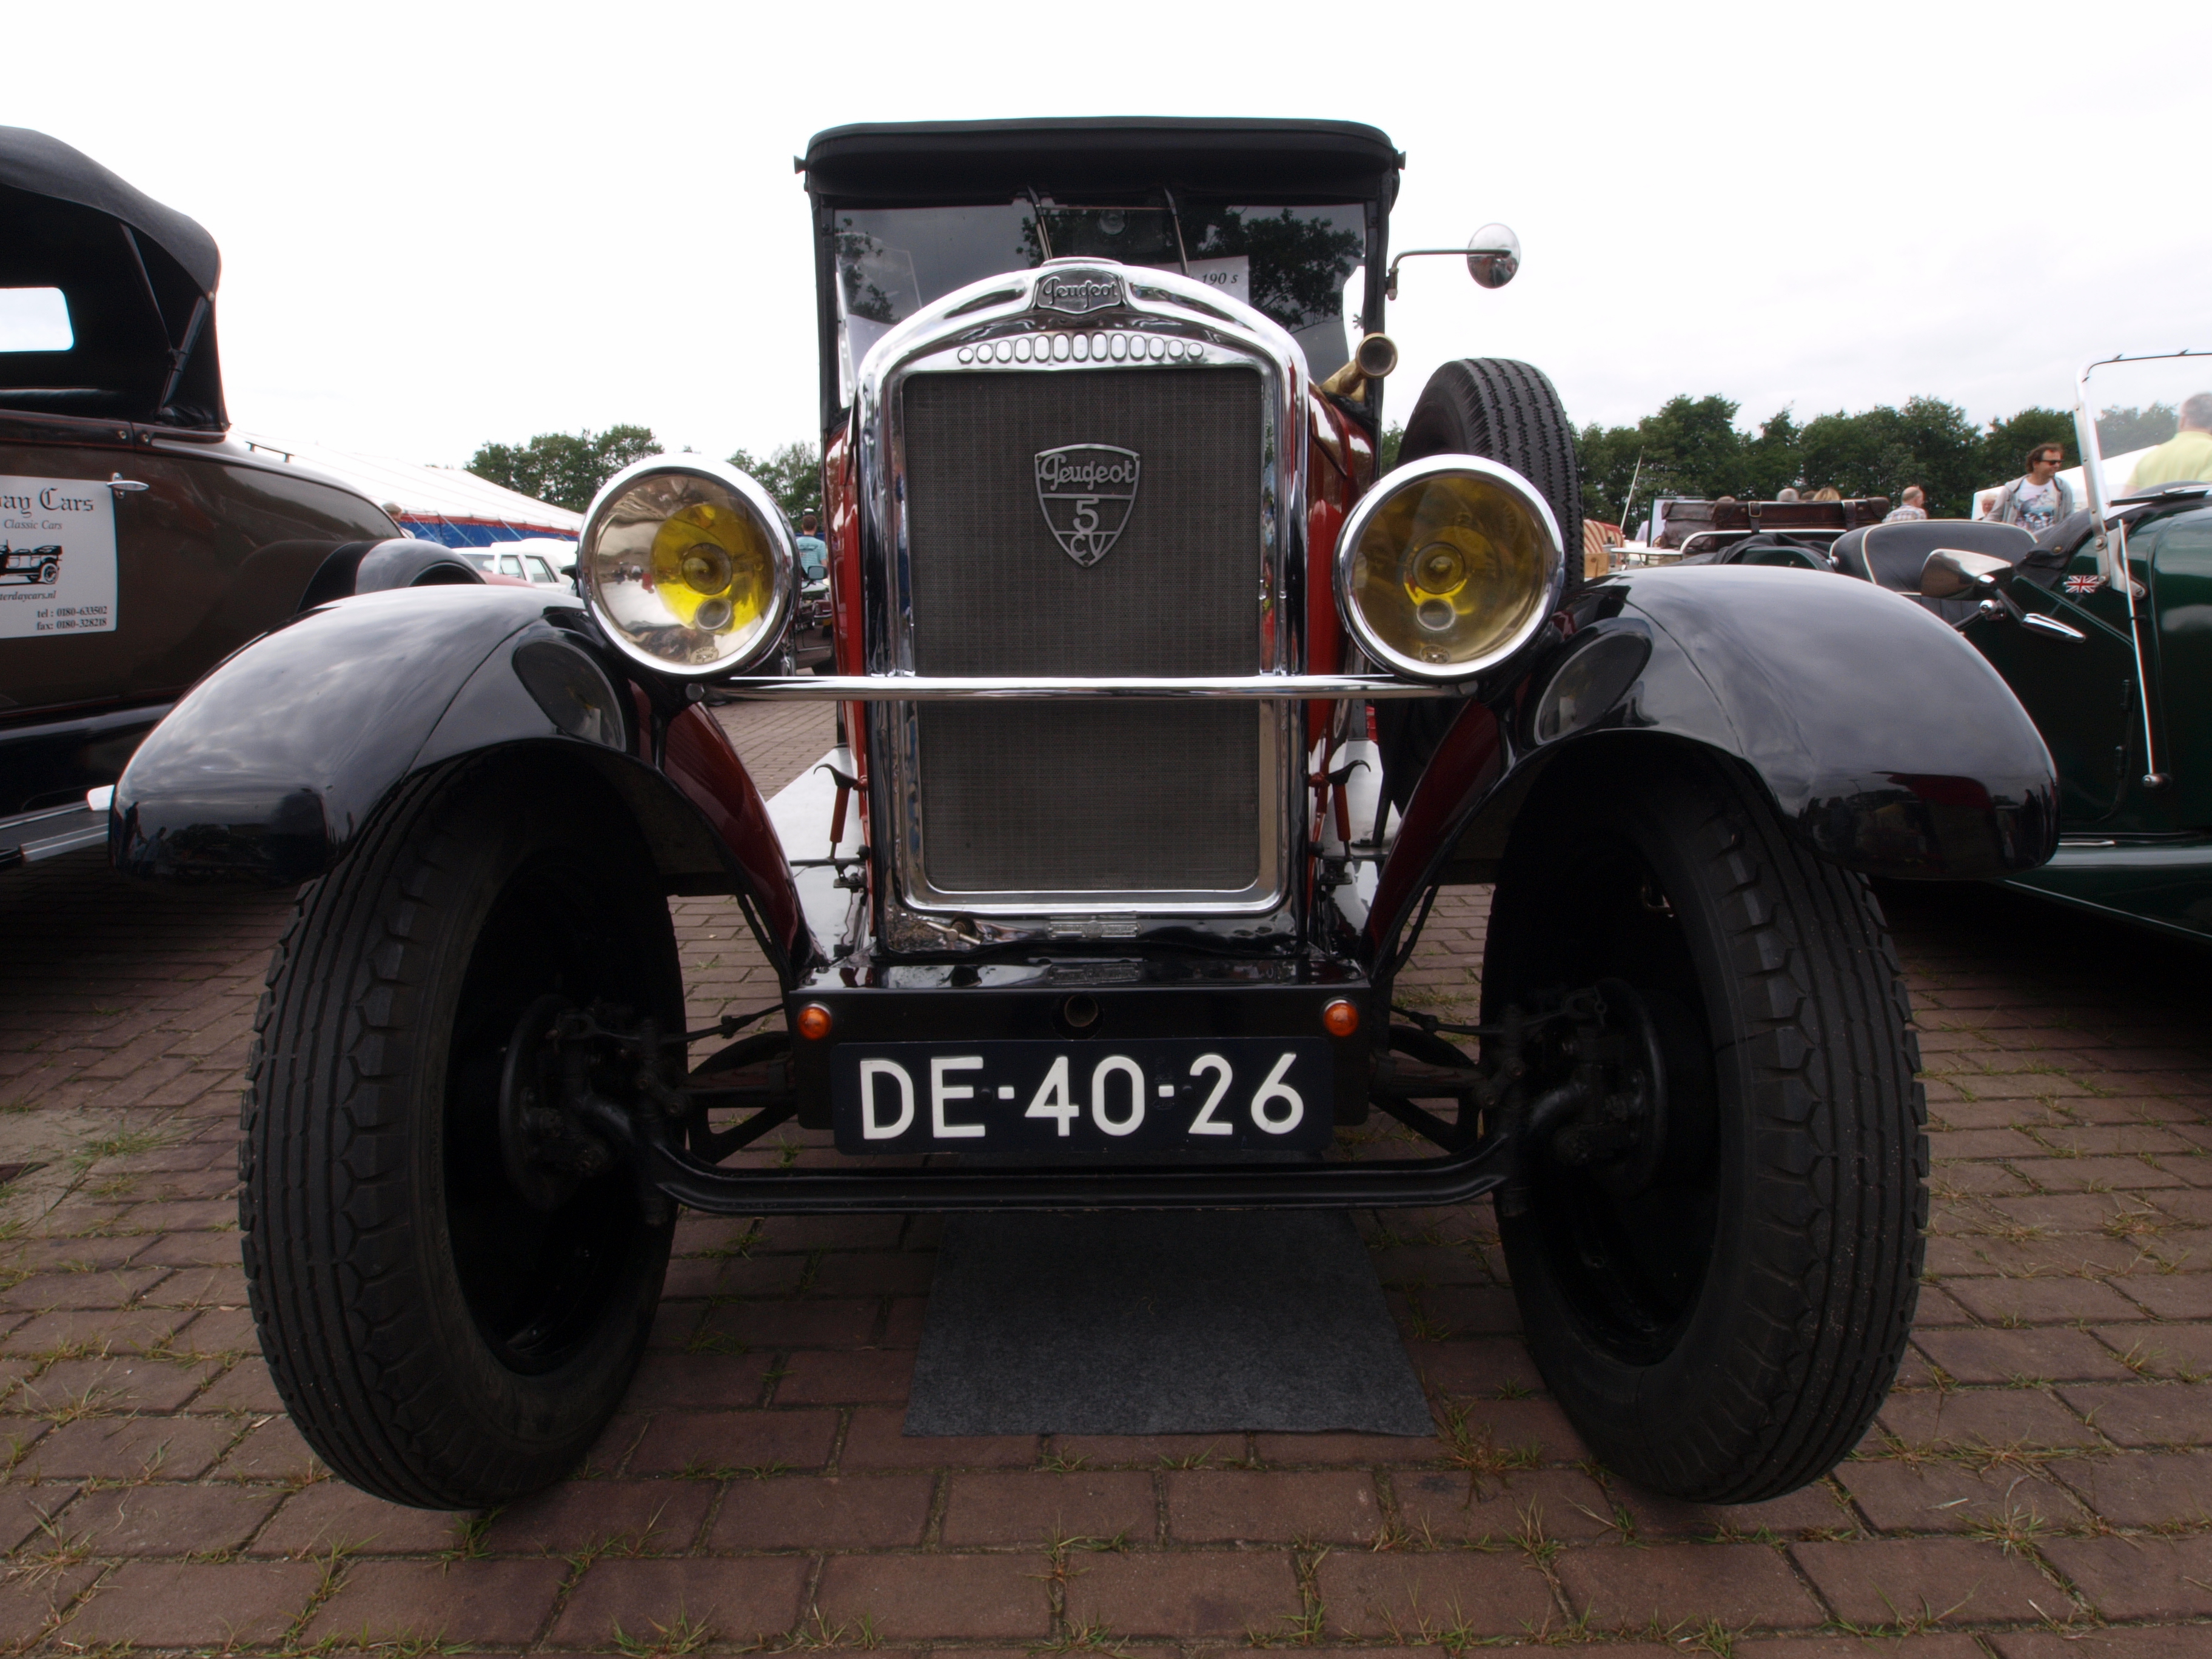 1930 Peugeot, Dutch licence registration DE-40-26 p6